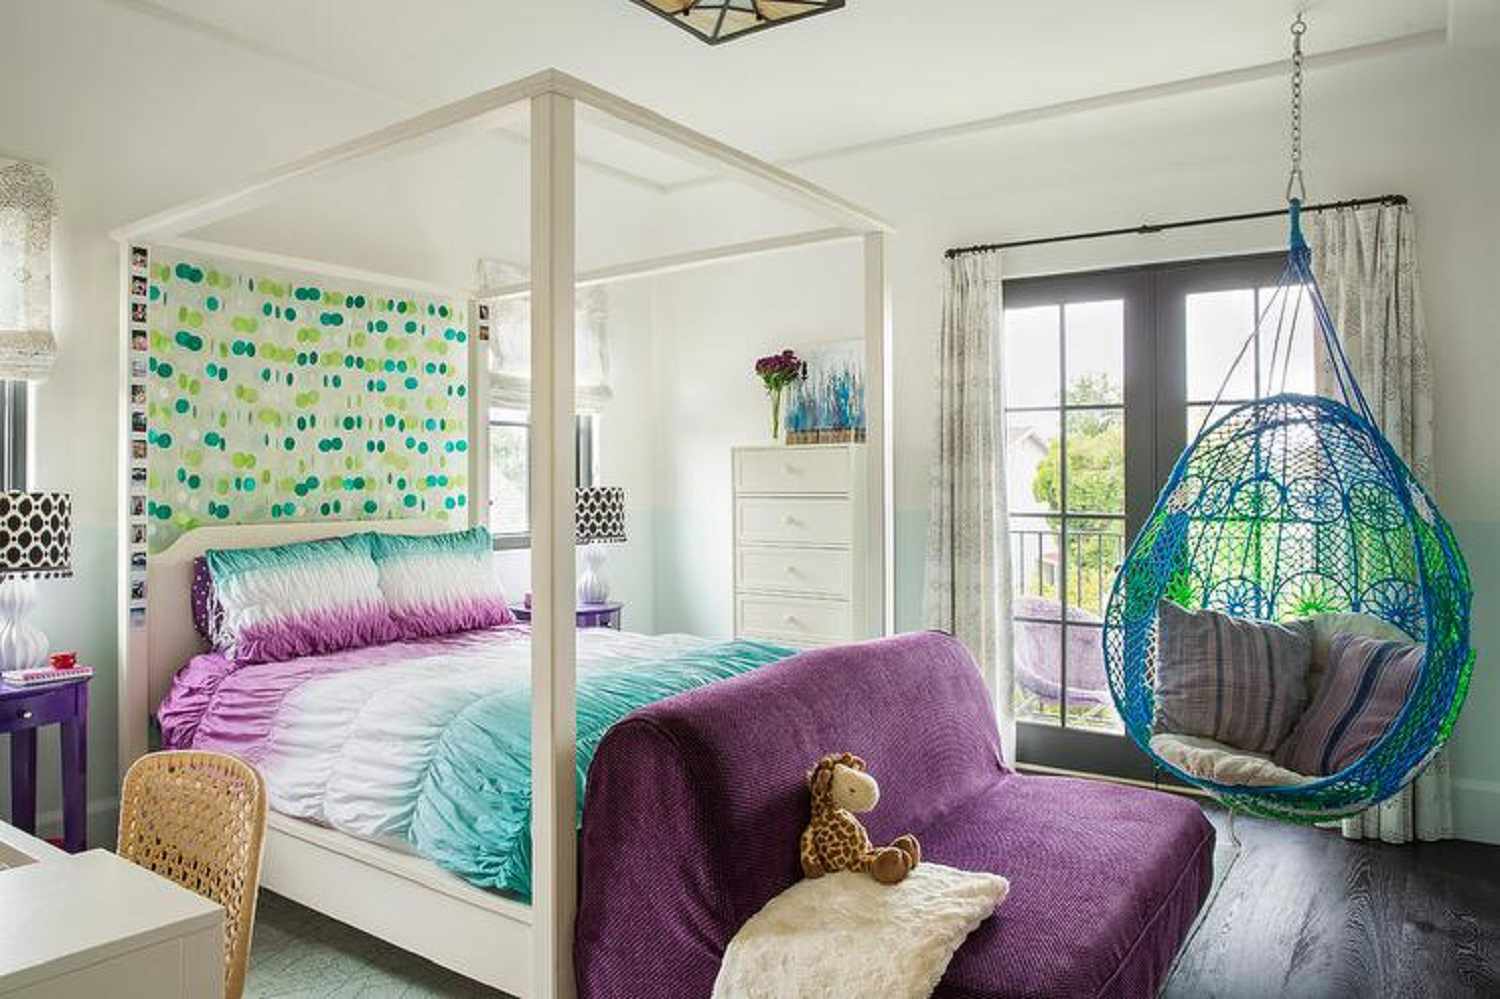 Dormitorio de niña adolescente morado, azul y verde